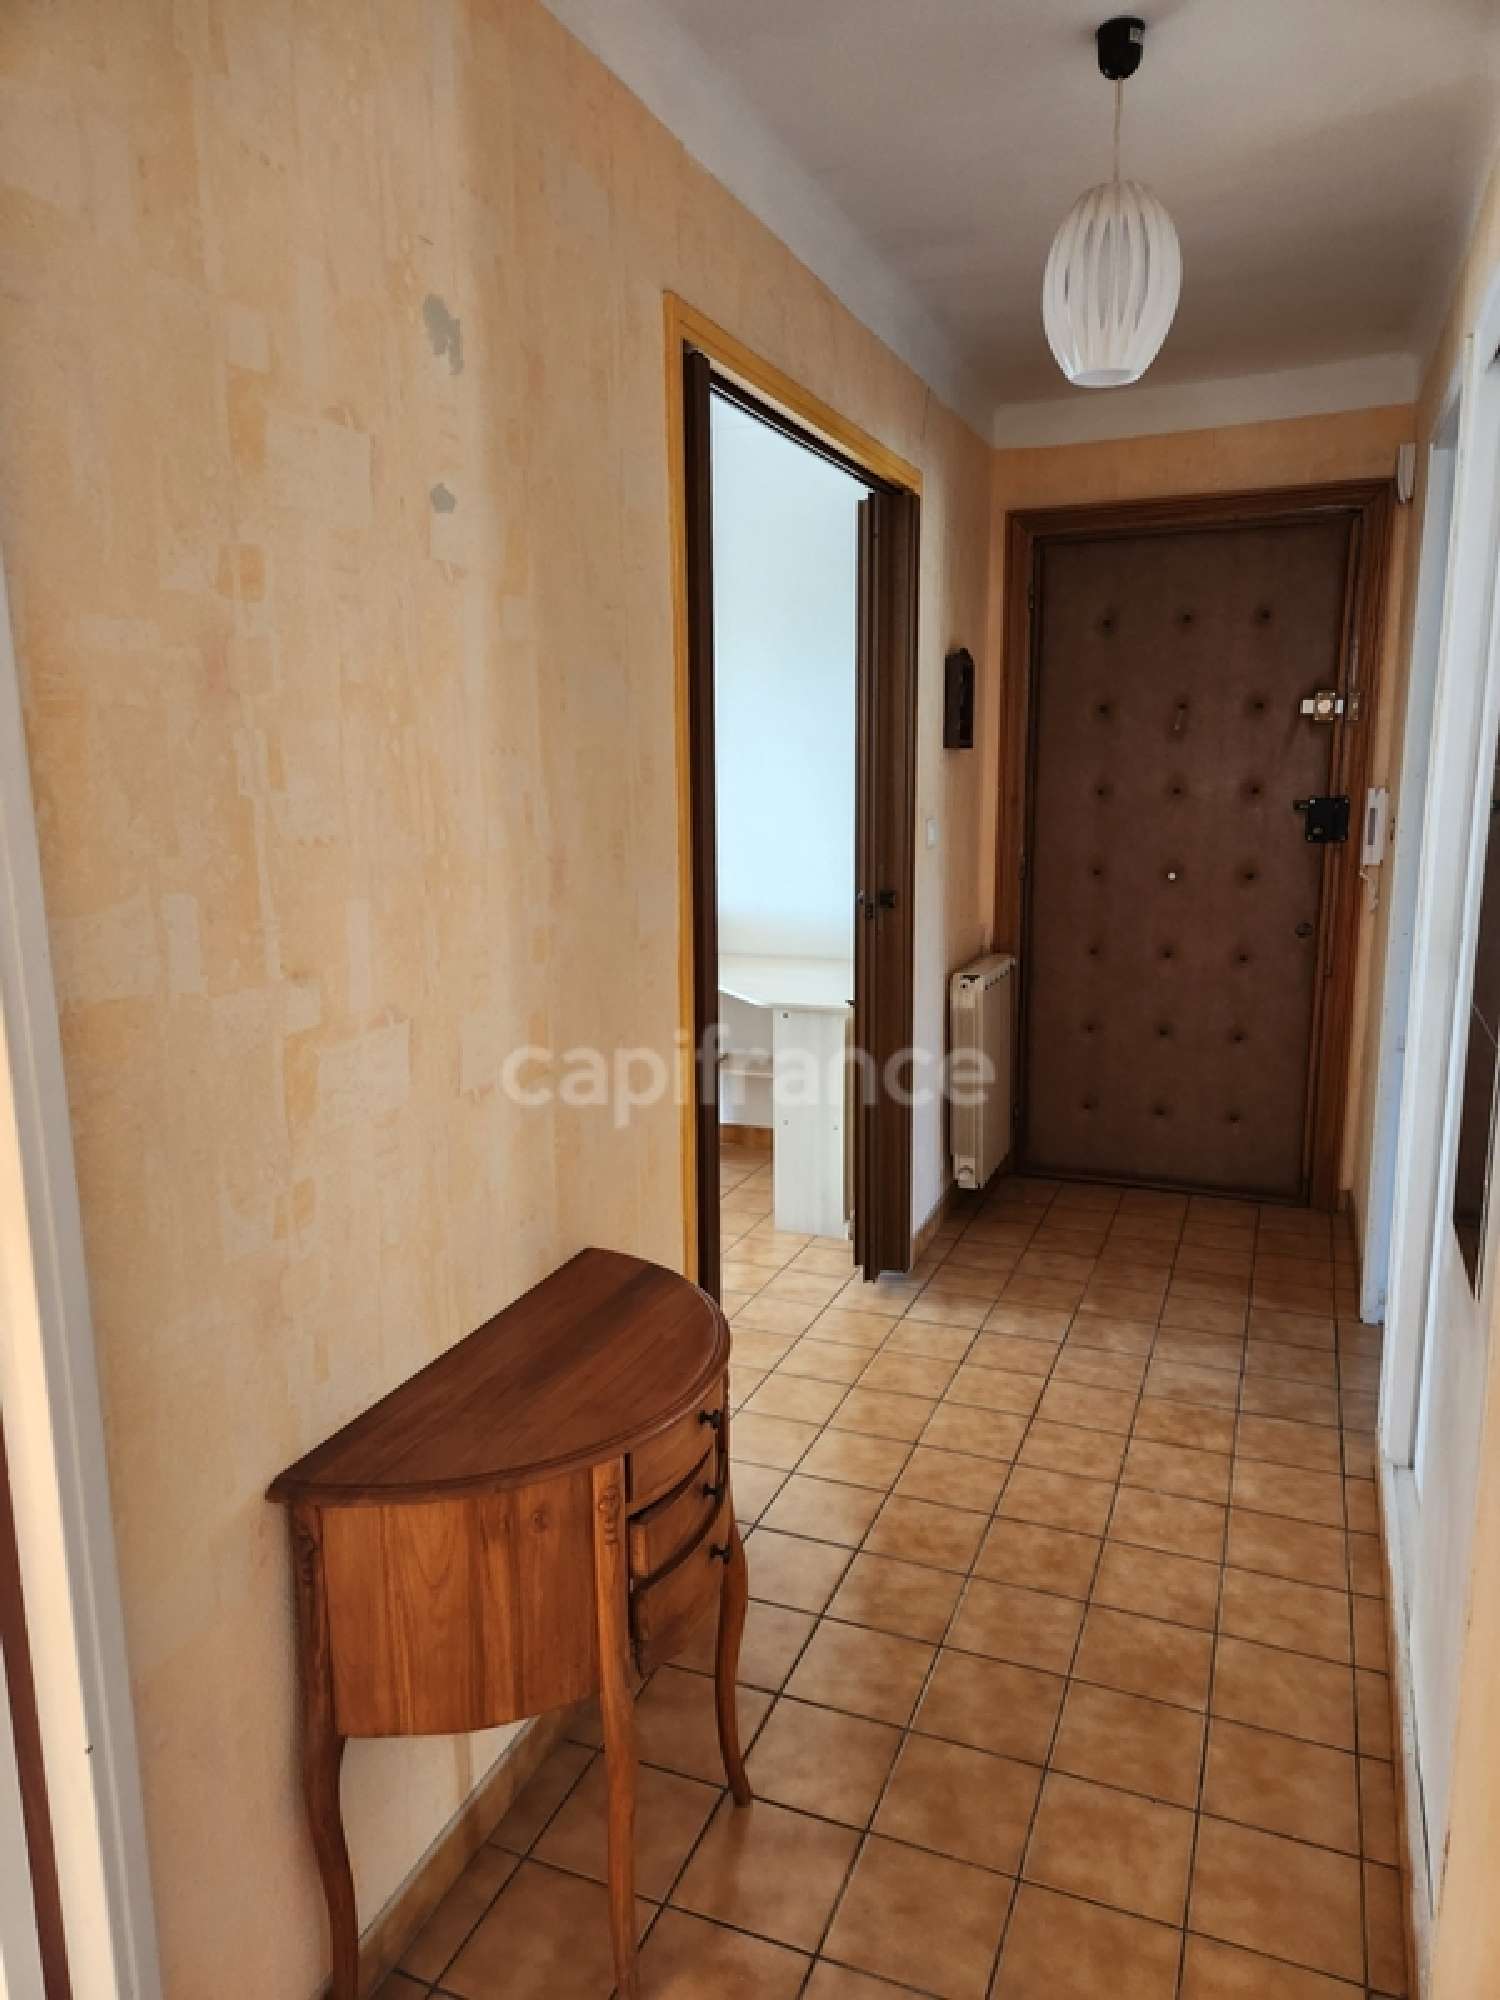  for sale apartment Toulon 83200 Var 7